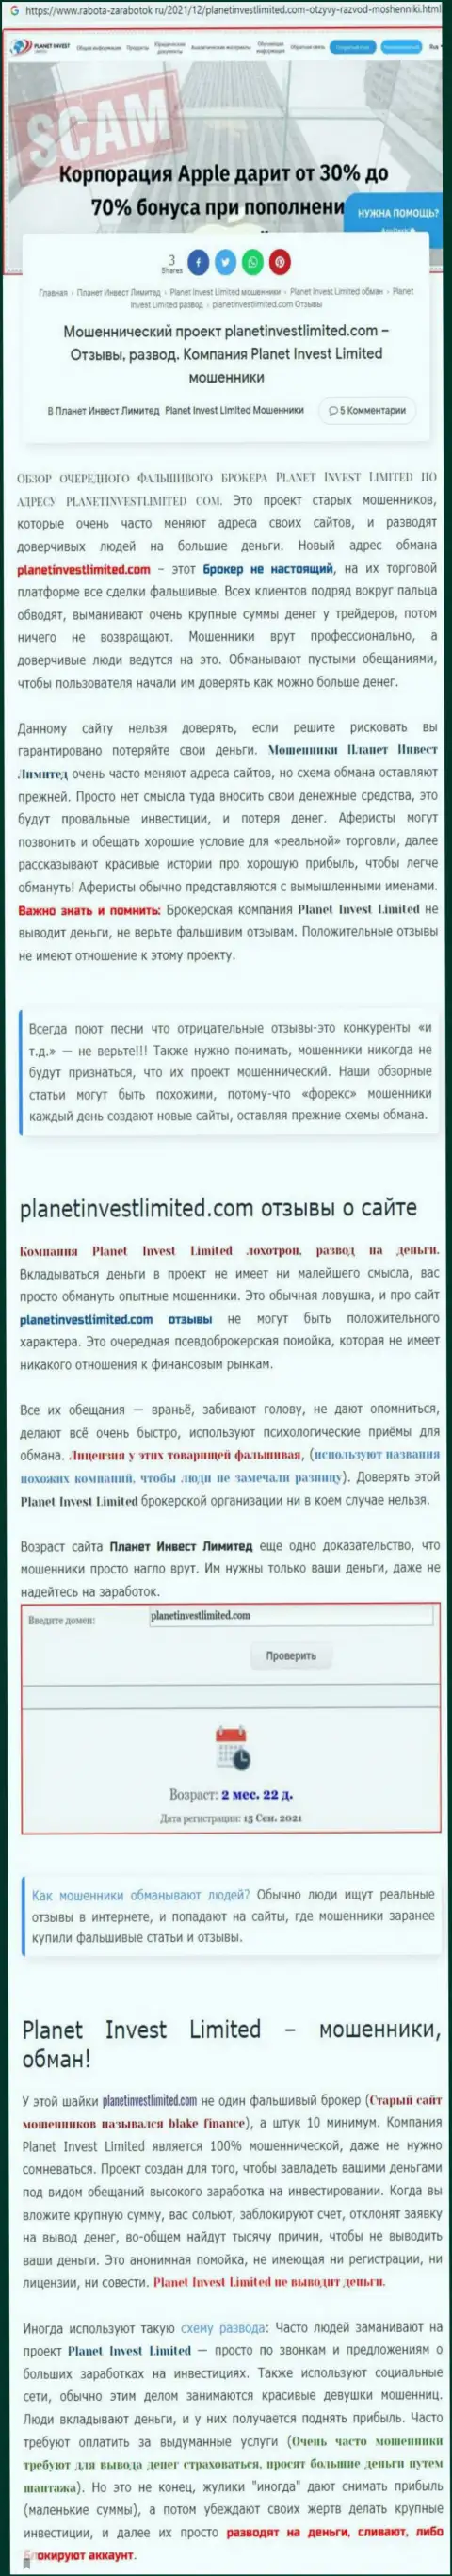 Не опасно ли связываться с компанией Planet Invest Limited ? (Обзор афер организации)